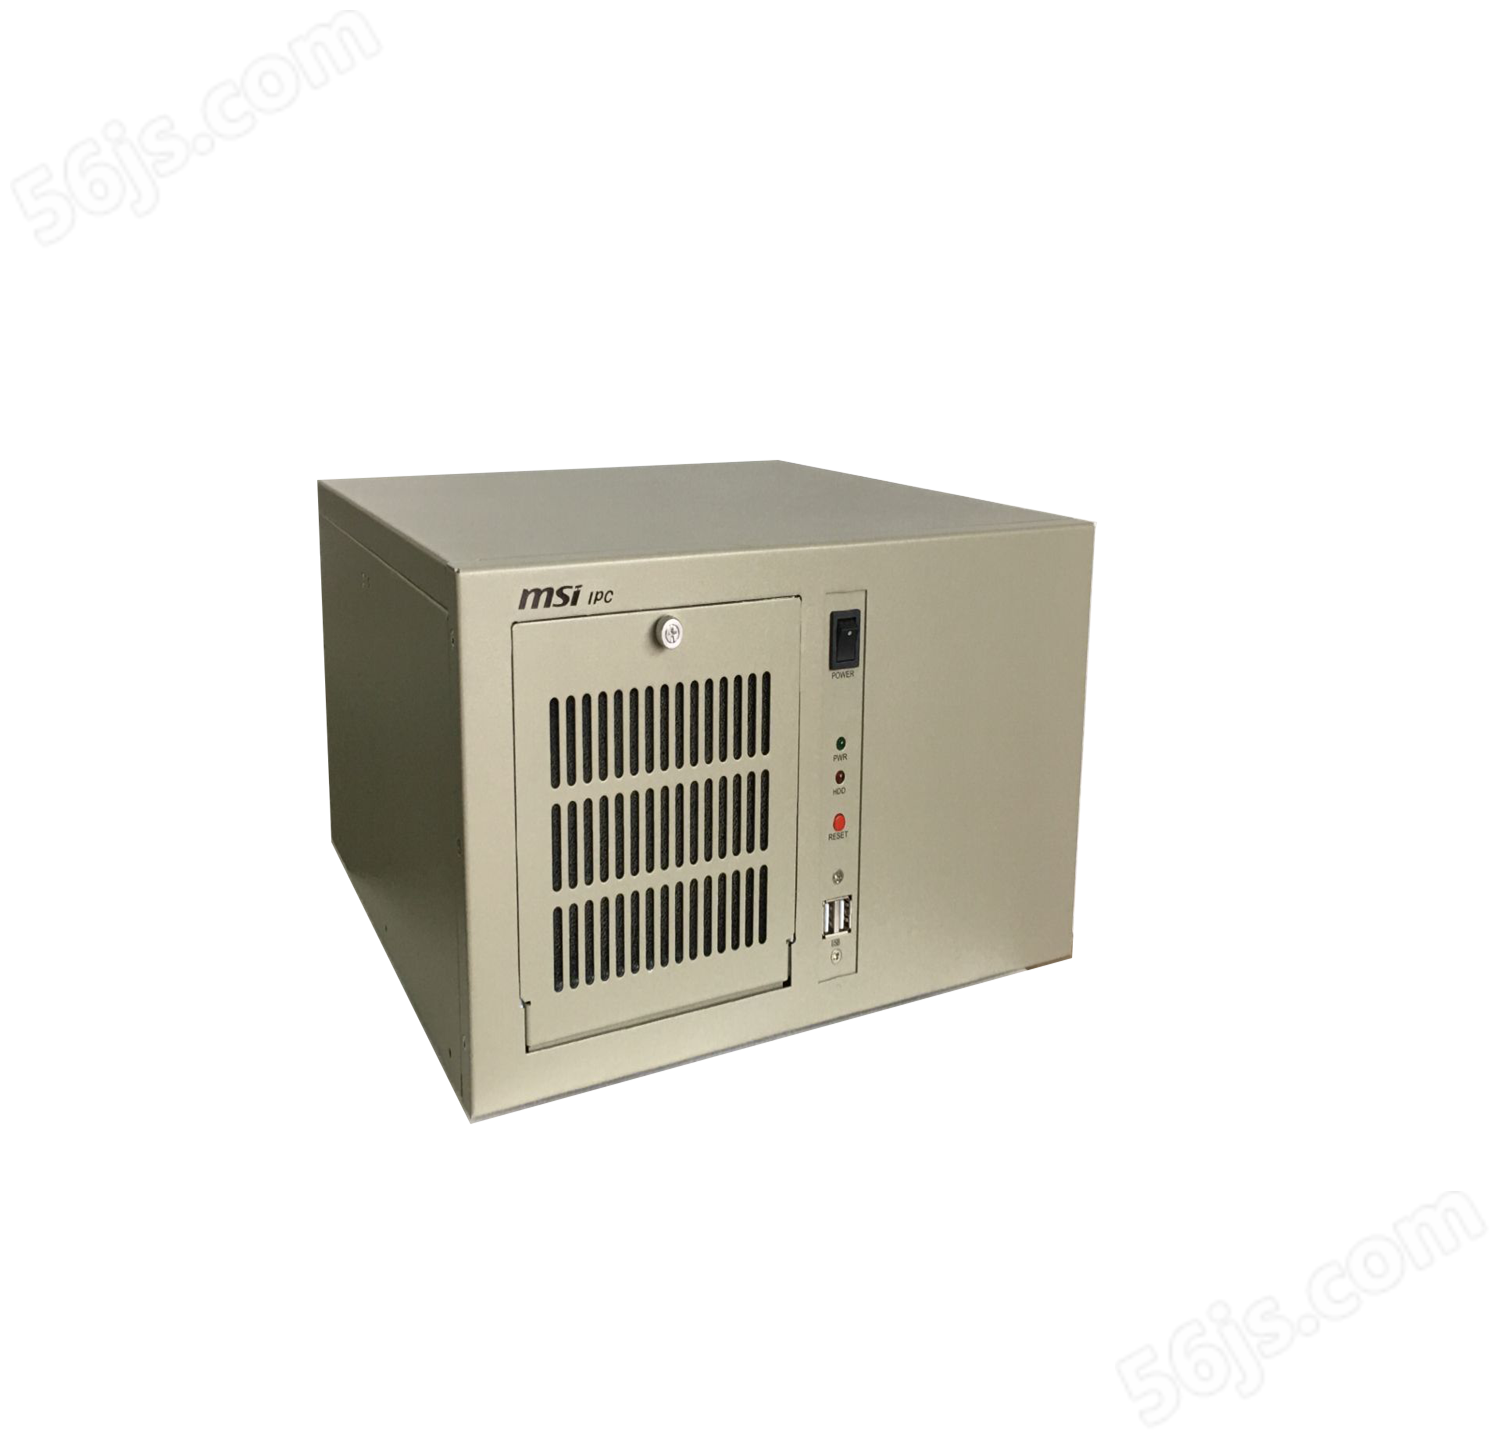 IPC-608-Q370V1.0壁挂式7槽位工控机